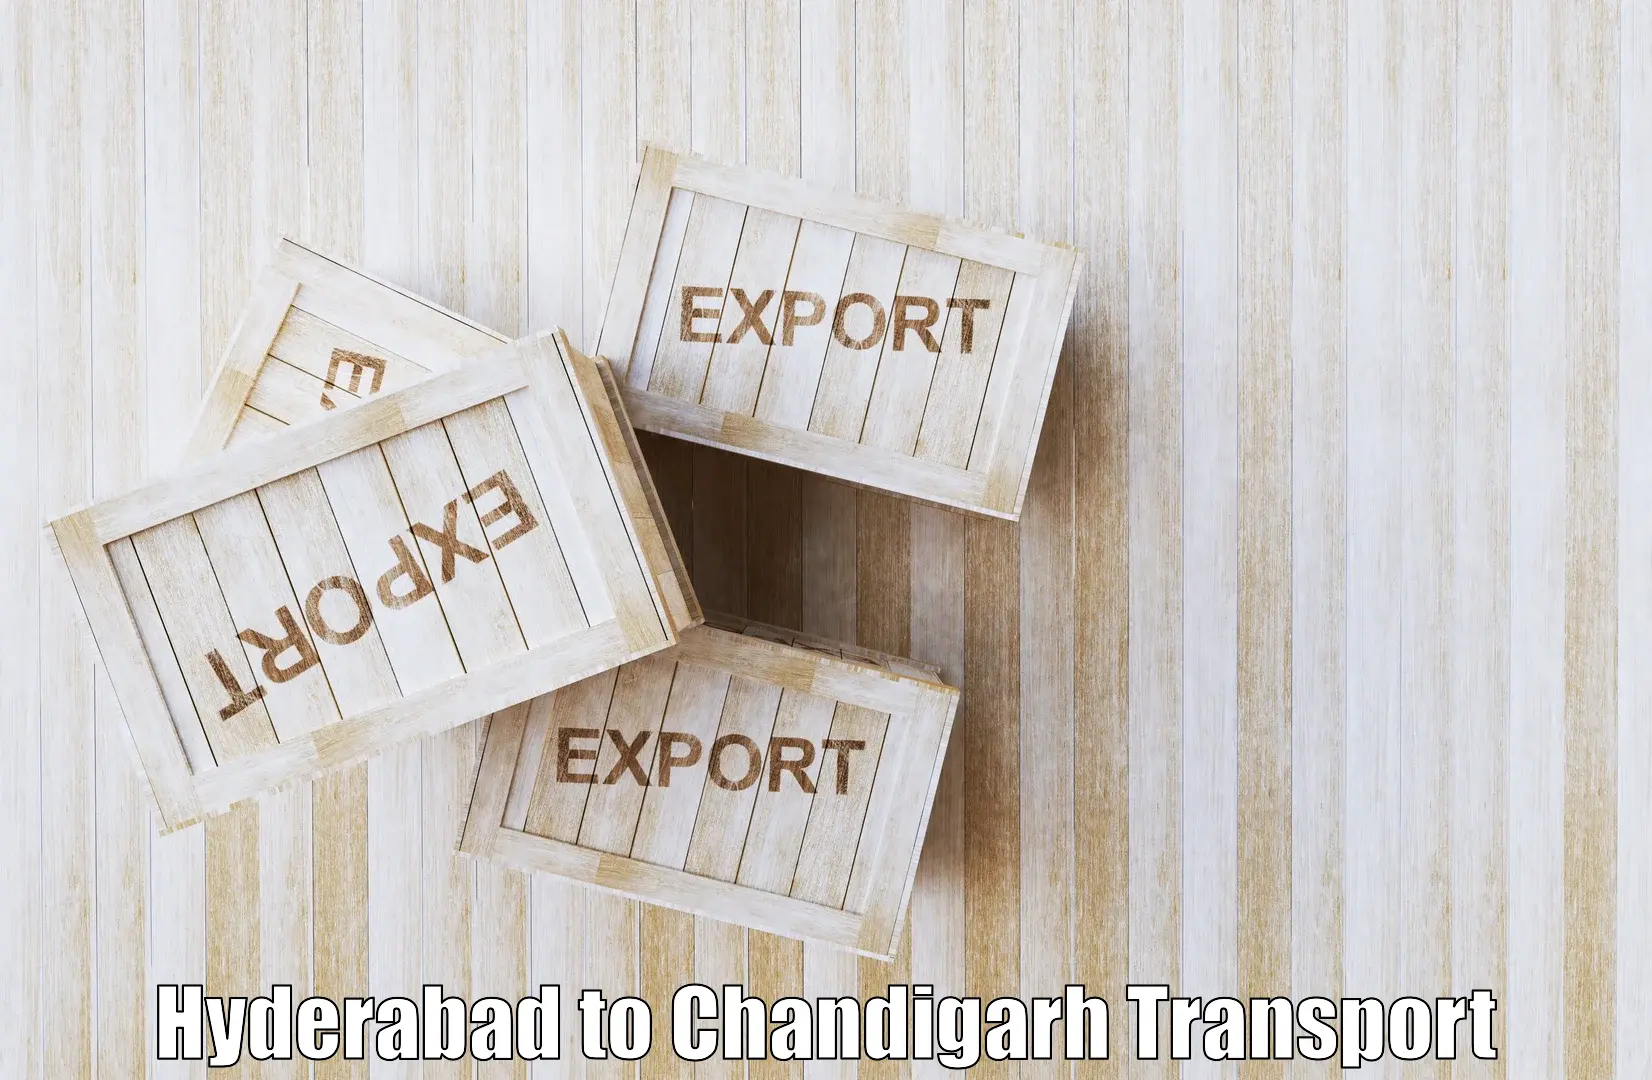 Online transport Hyderabad to Chandigarh